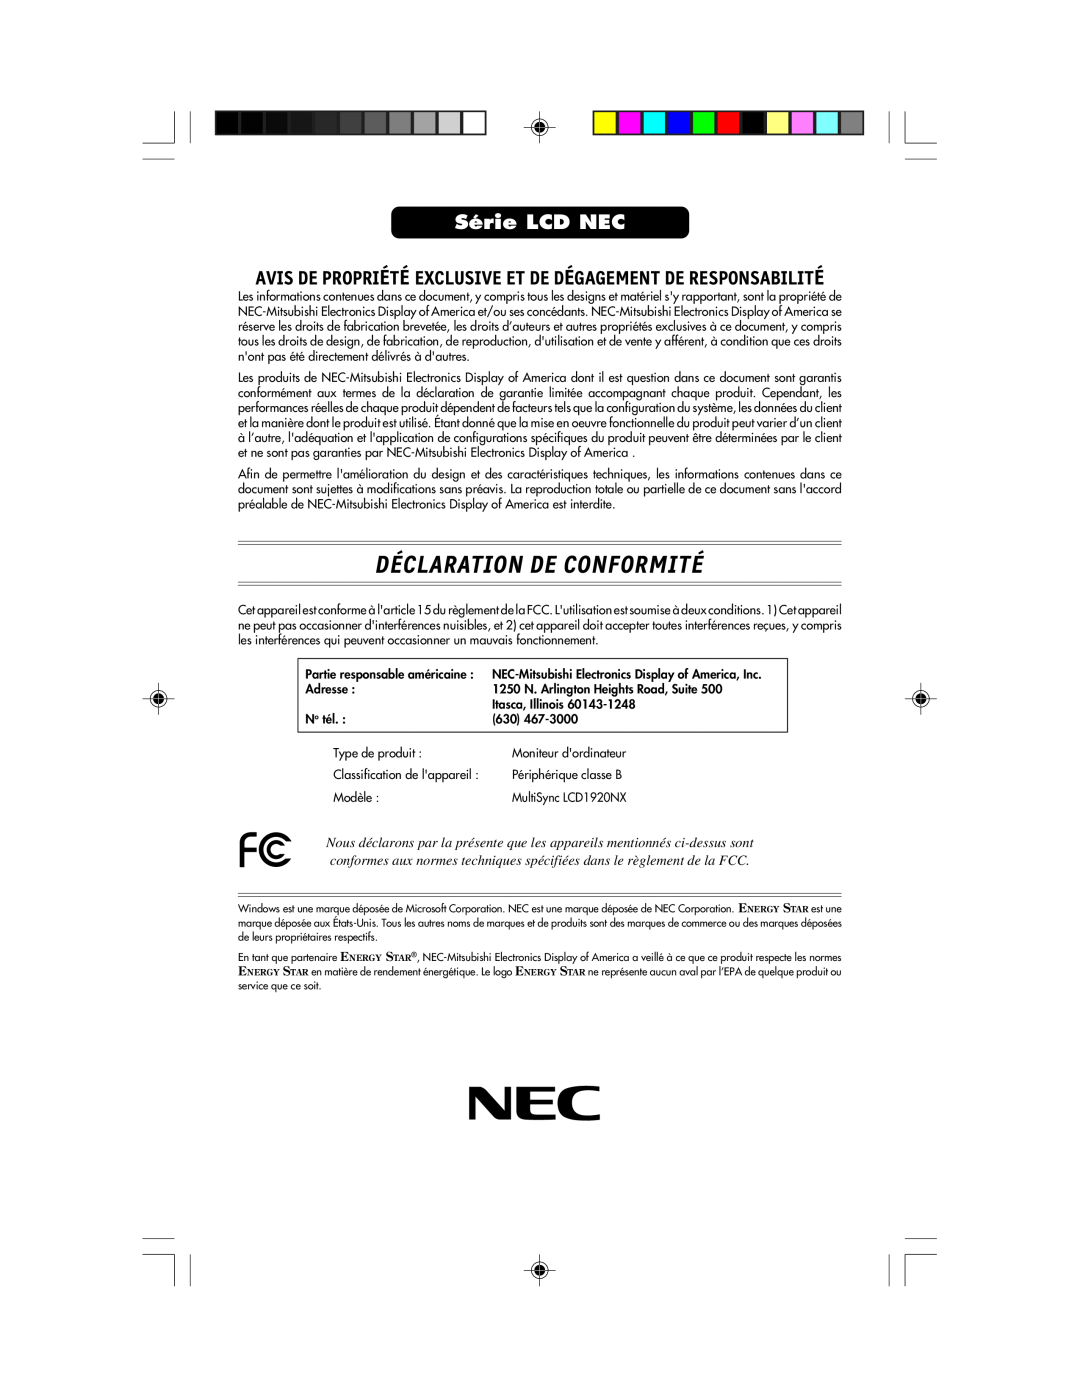 NEC LCD1920NX Déclaration De Conformité, Série LCD NEC, Avis De Propriété Exclusive Et De Dégagement De Responsabilité 